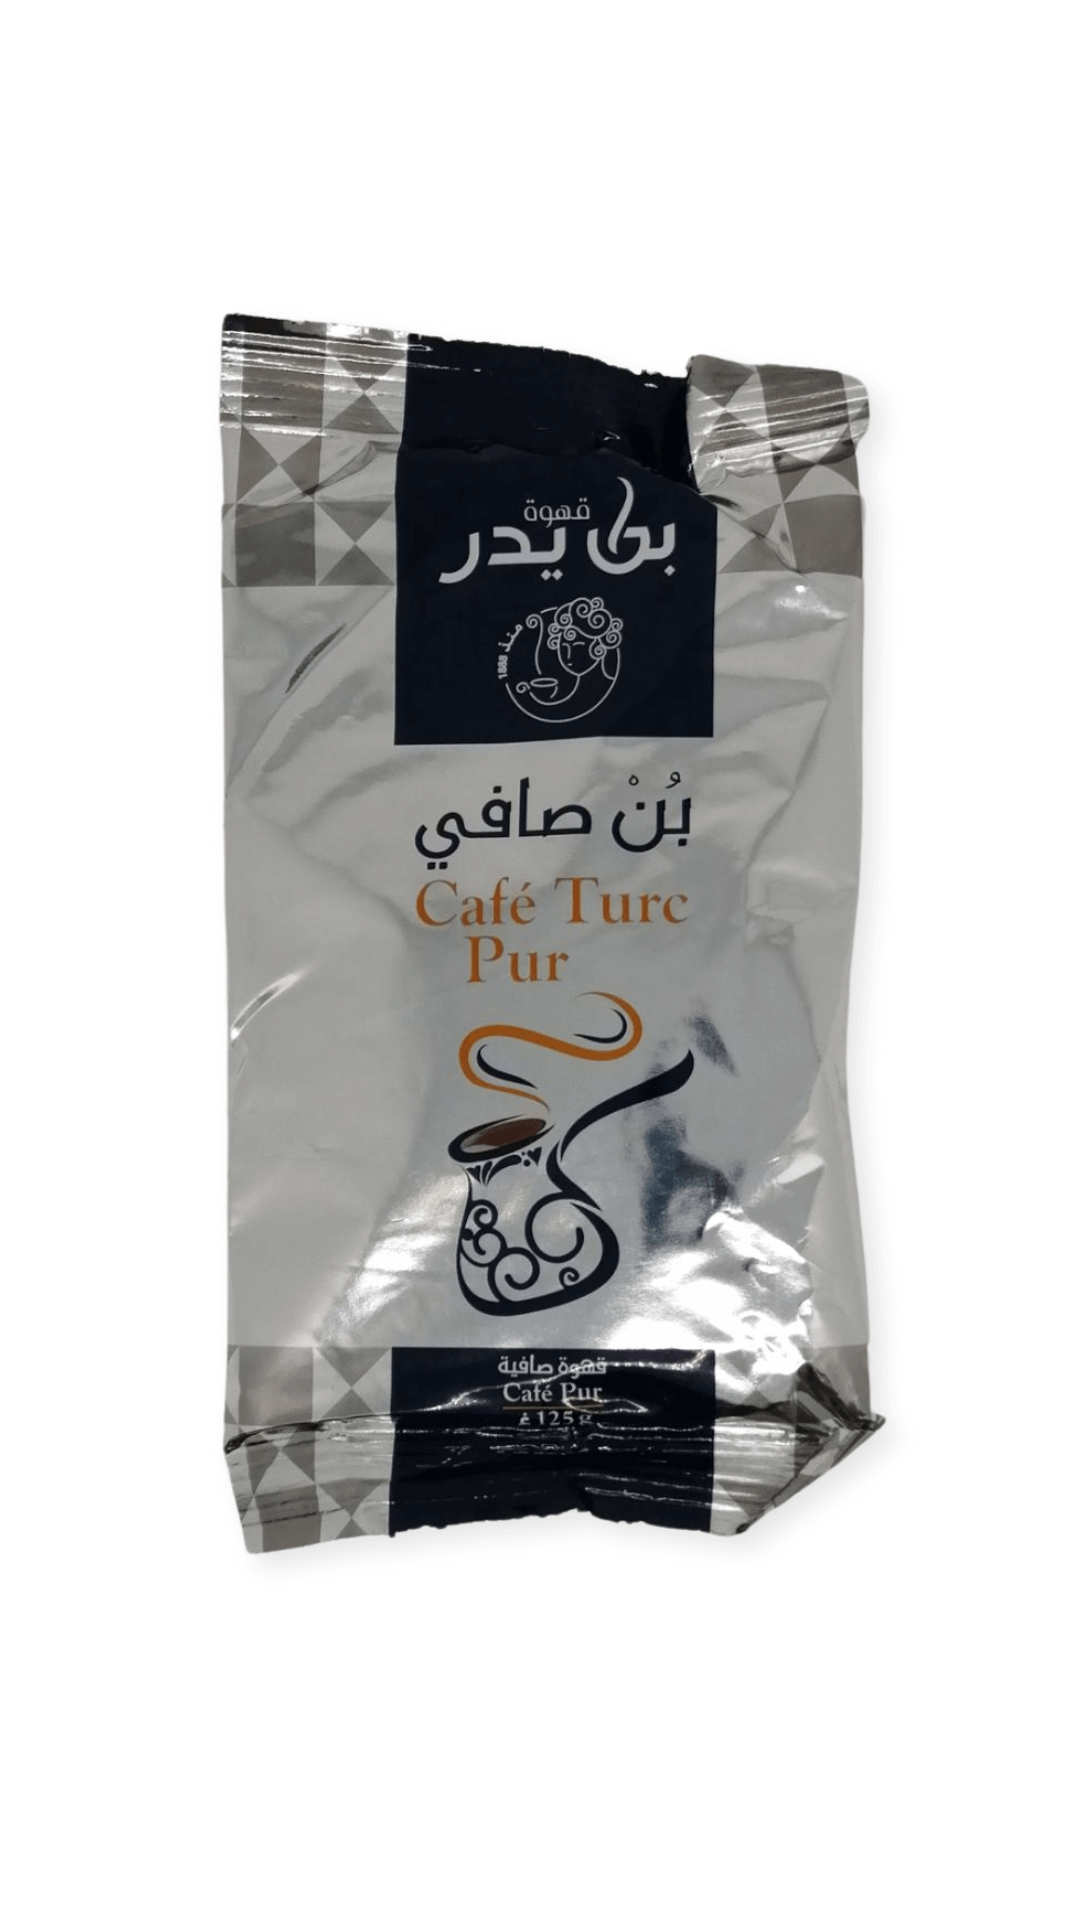 Tunesischer Kaffe-Ben Yedar- Cafe Turc Pur-125g – RatelFood